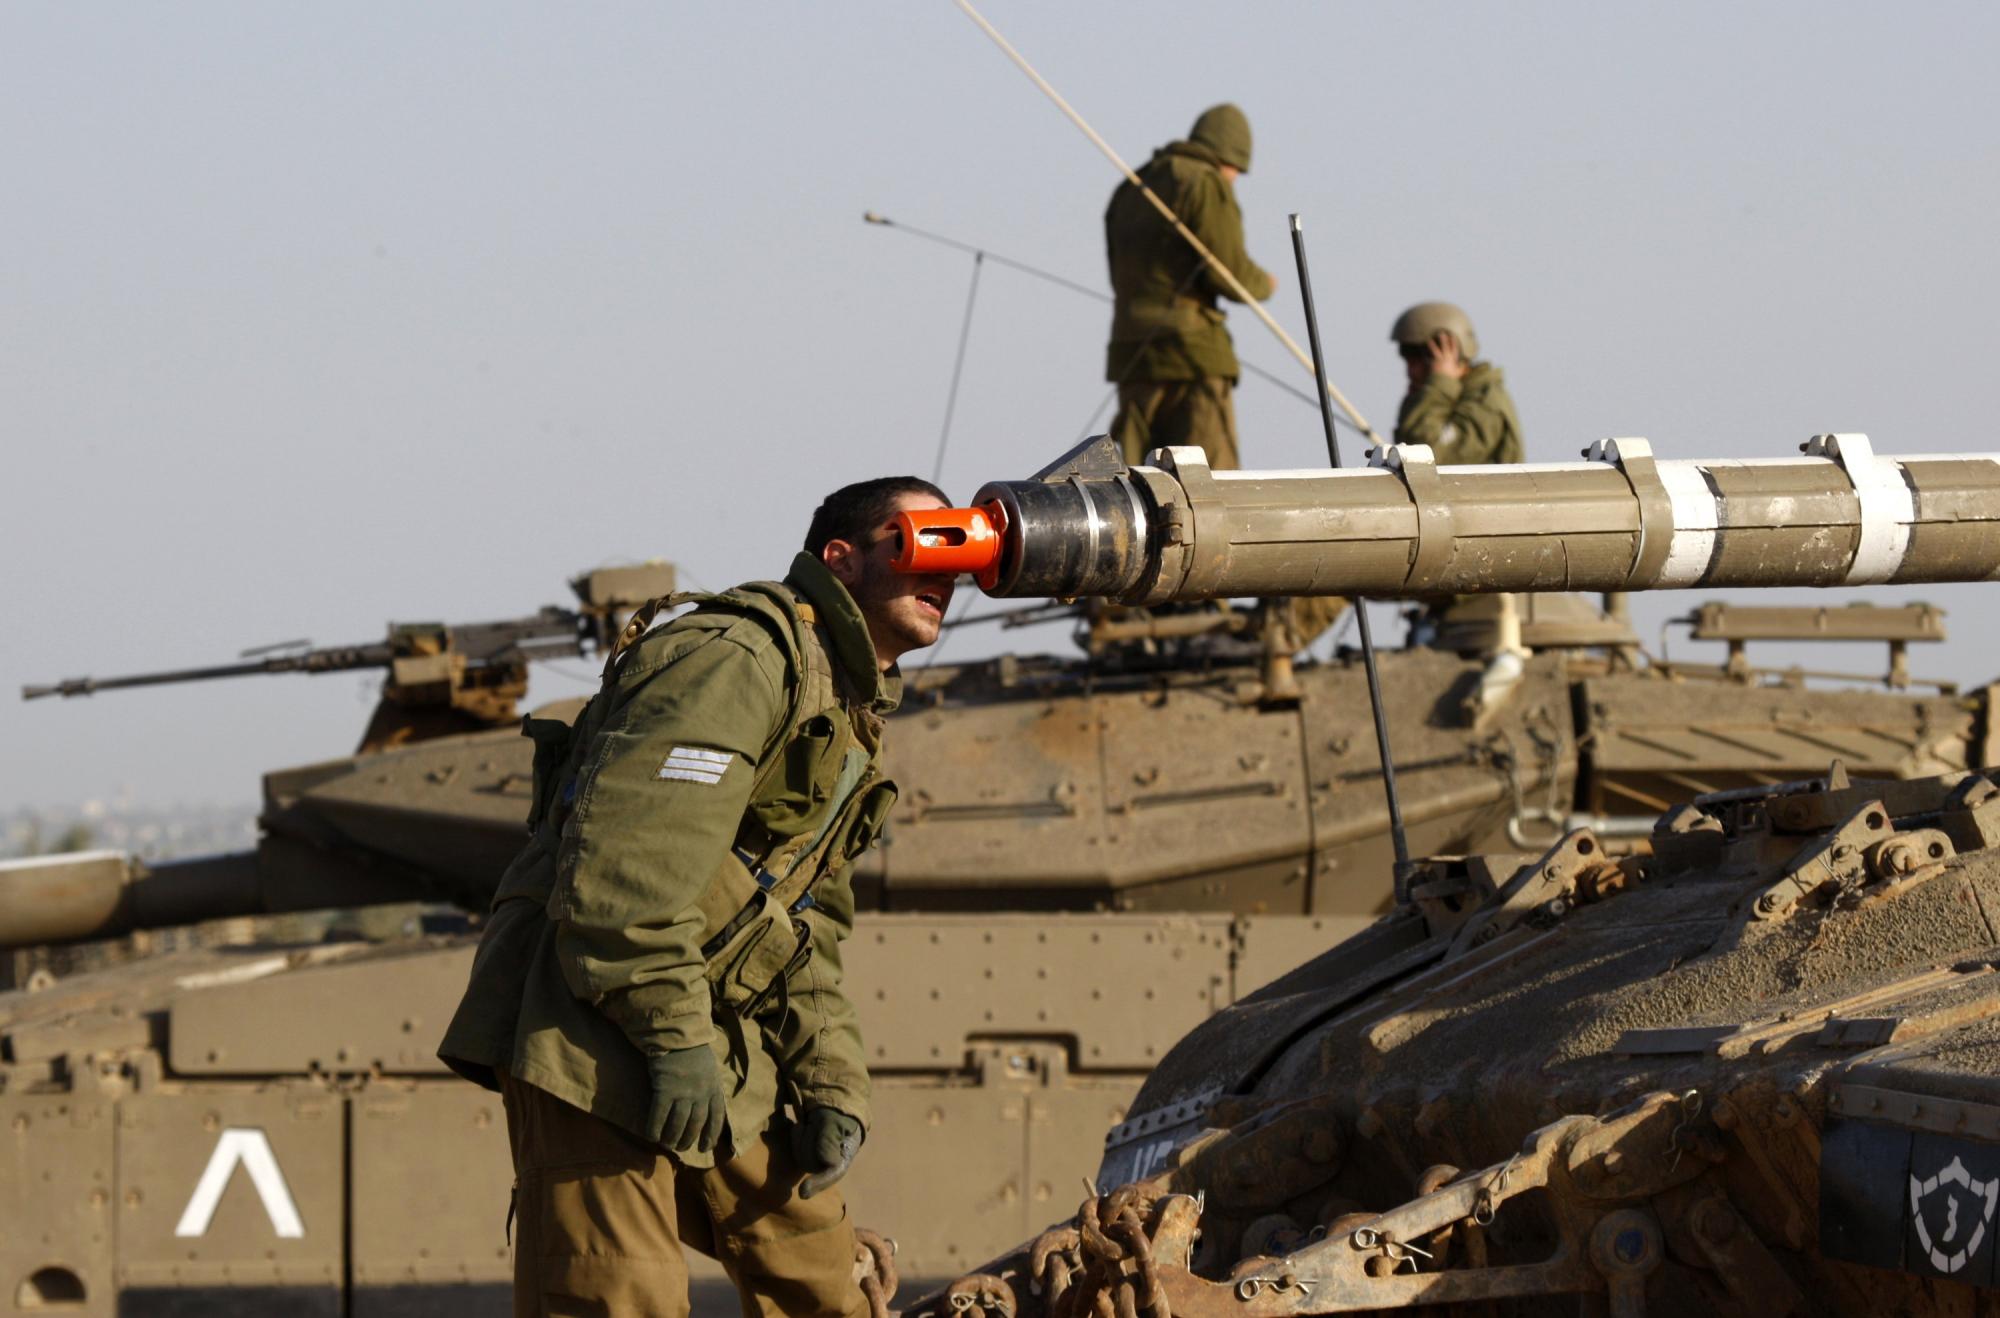 以军对加沙发动空袭 最新报道  声明呼吁全体巴勒斯坦人民团结起来